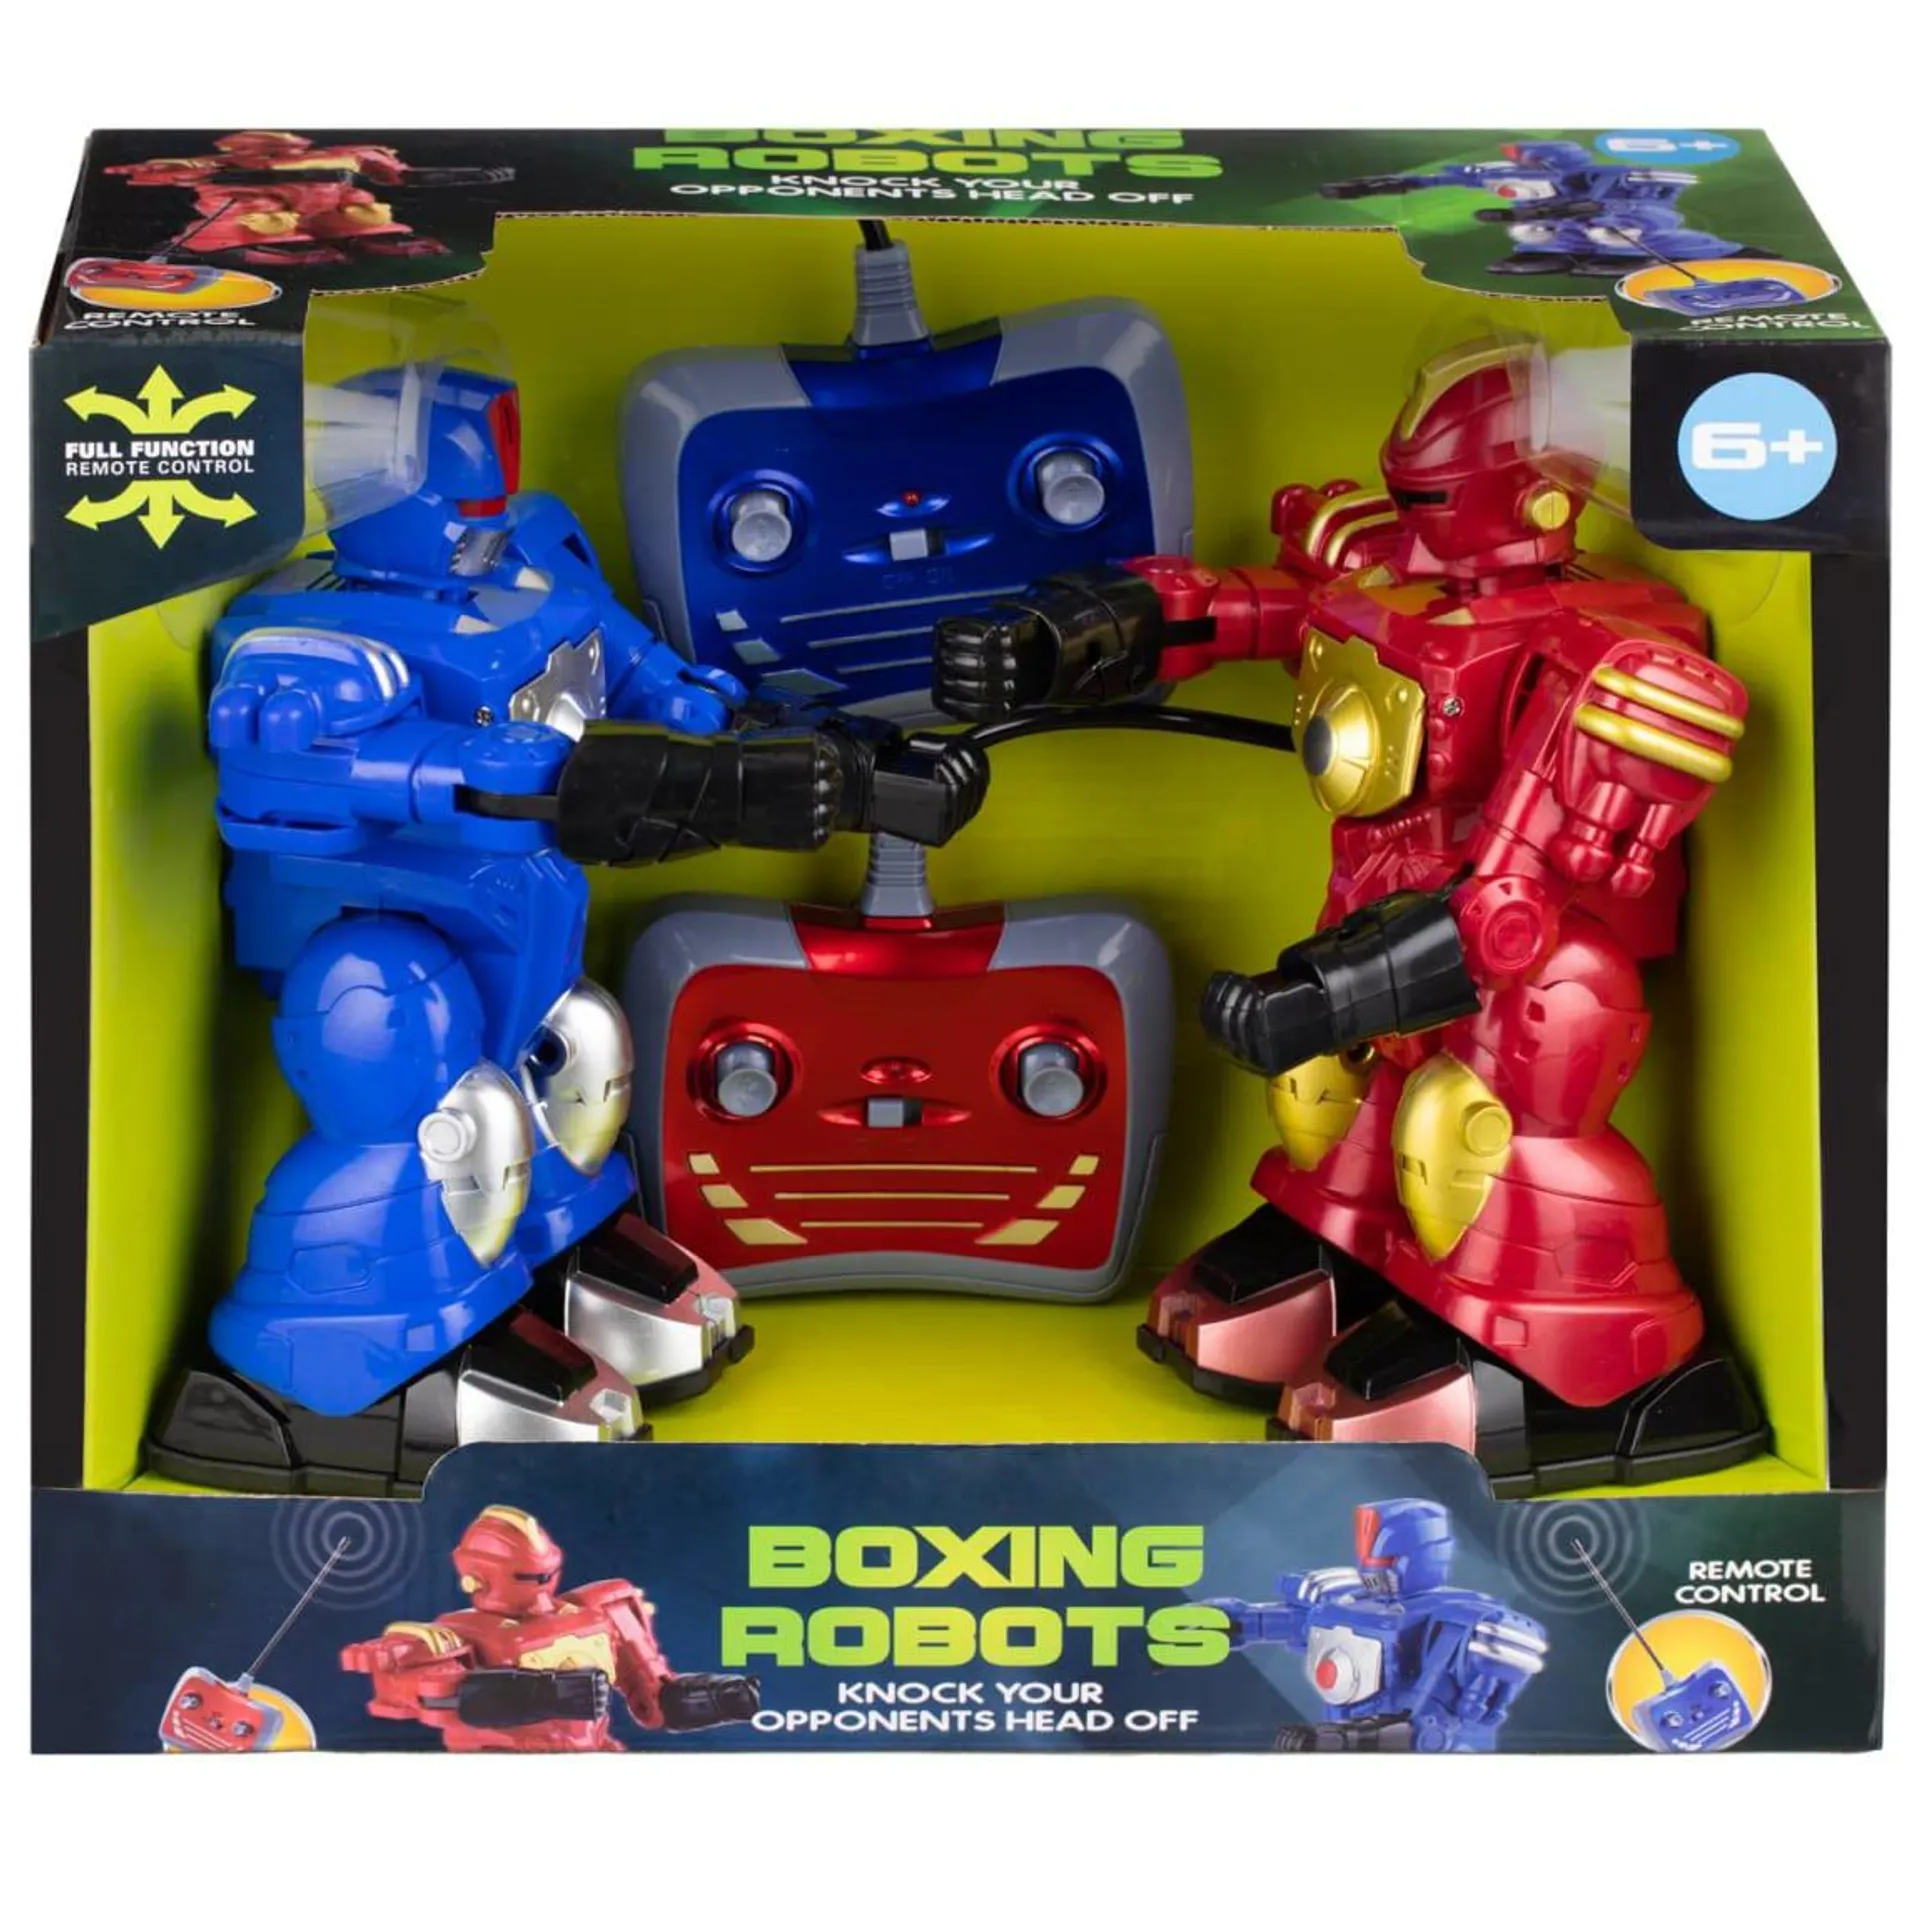 RC Boxing Robots